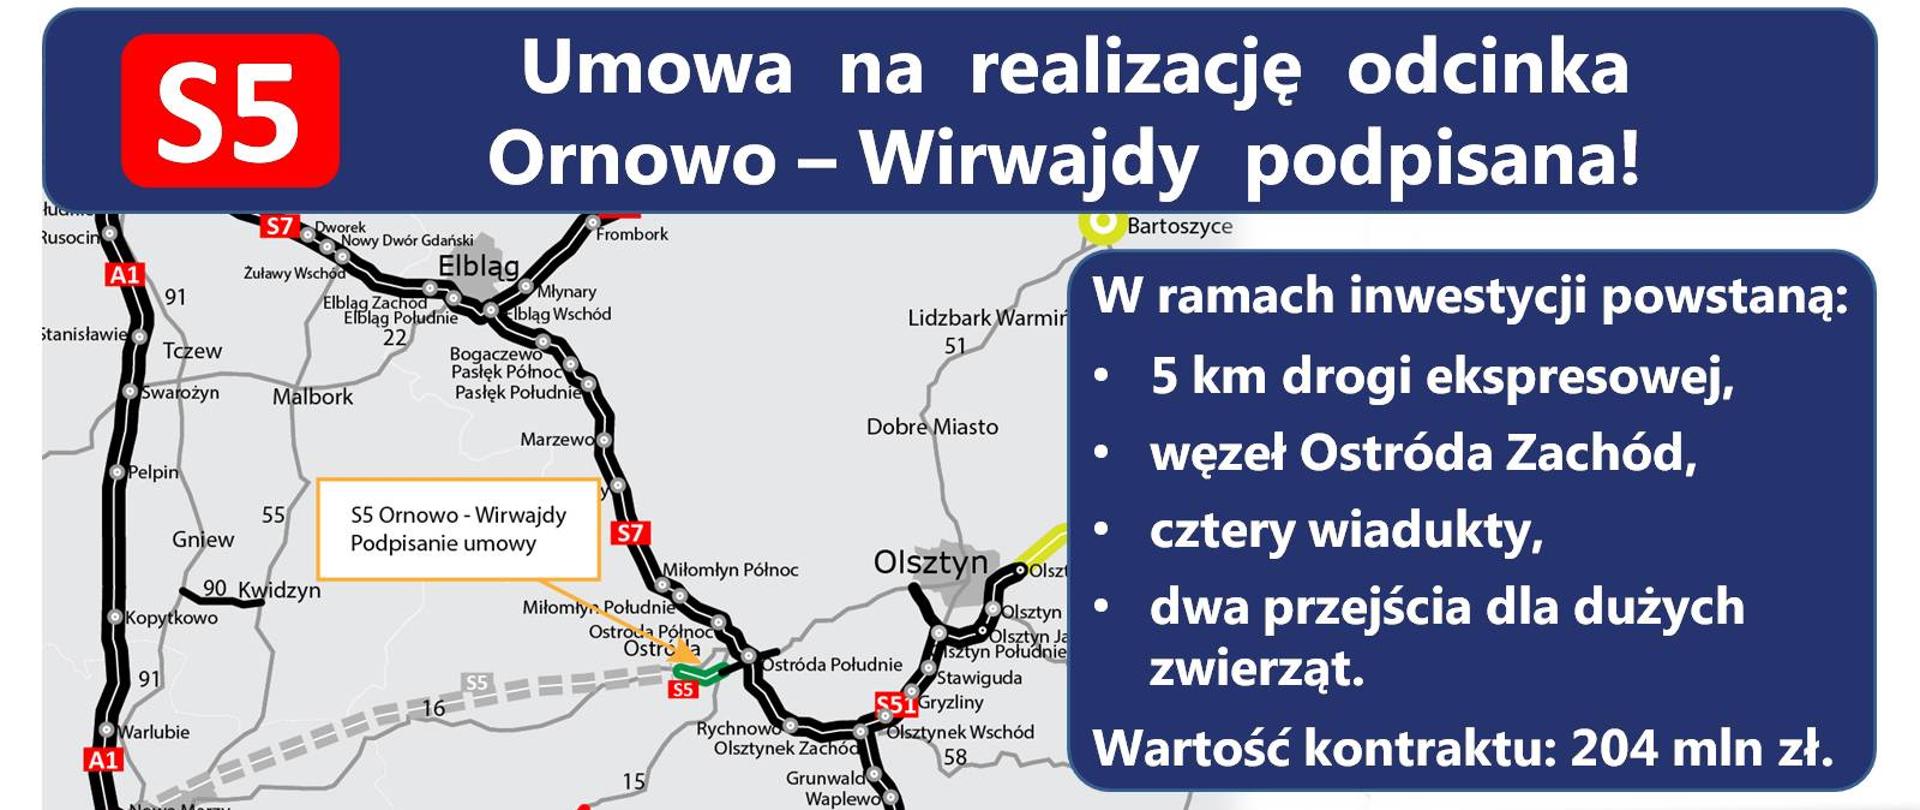 Odcinek drogi ekspresowej S5 Ornowo-Wirwajdy został skierowany do realizacji - infografika